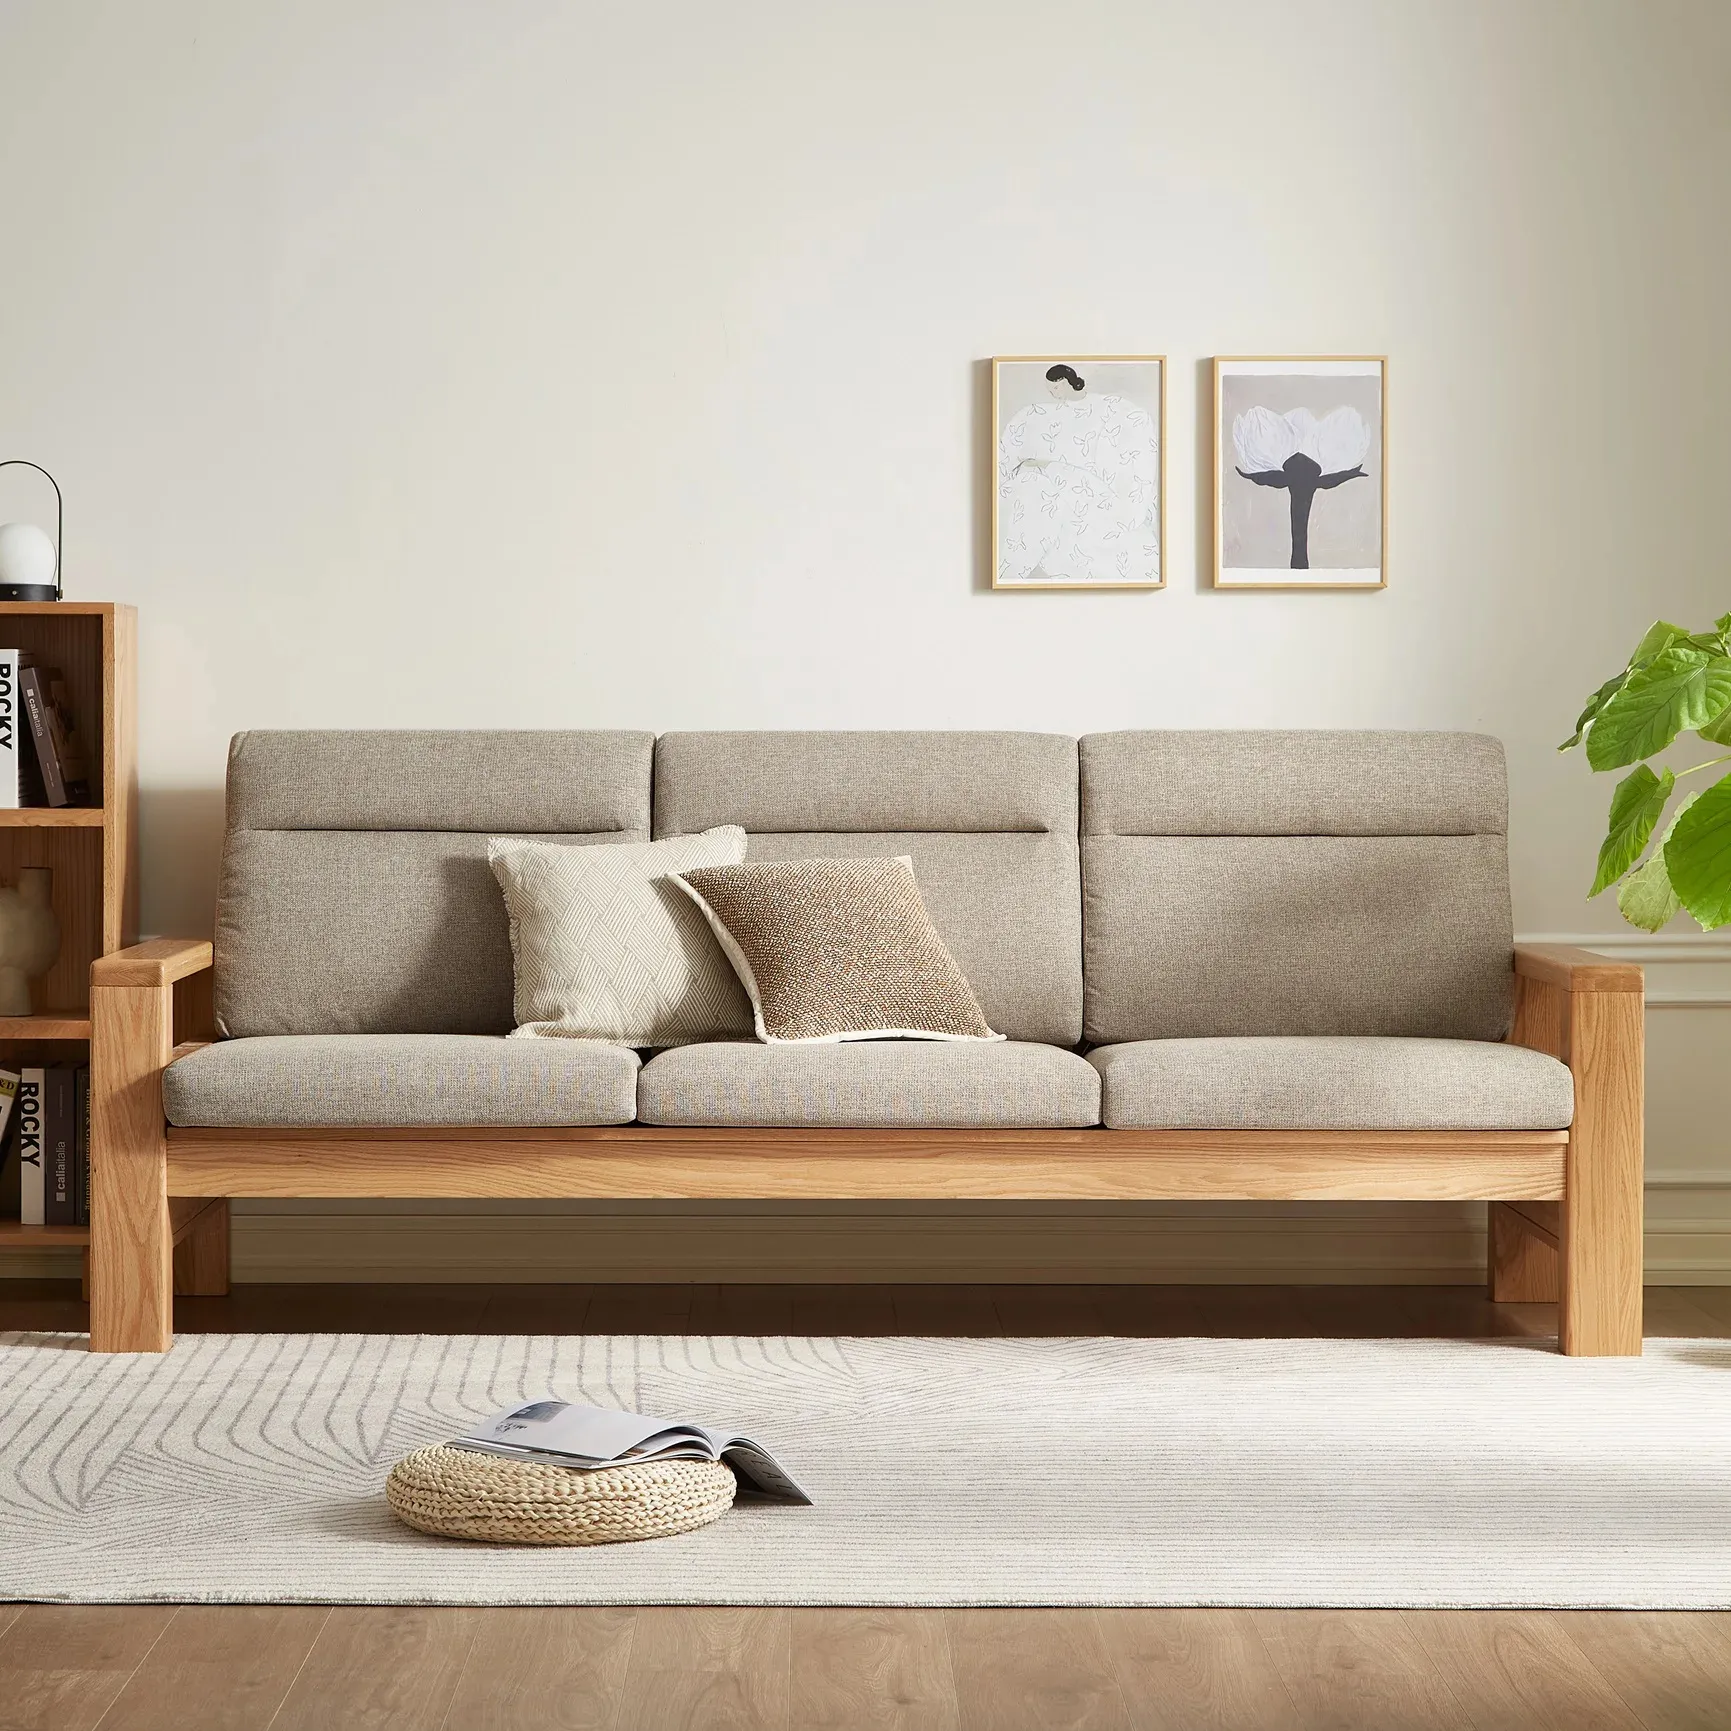 L7065 Schnitts ofa Salon warten Sofa Set Designs modern für Wohnzimmer möbel